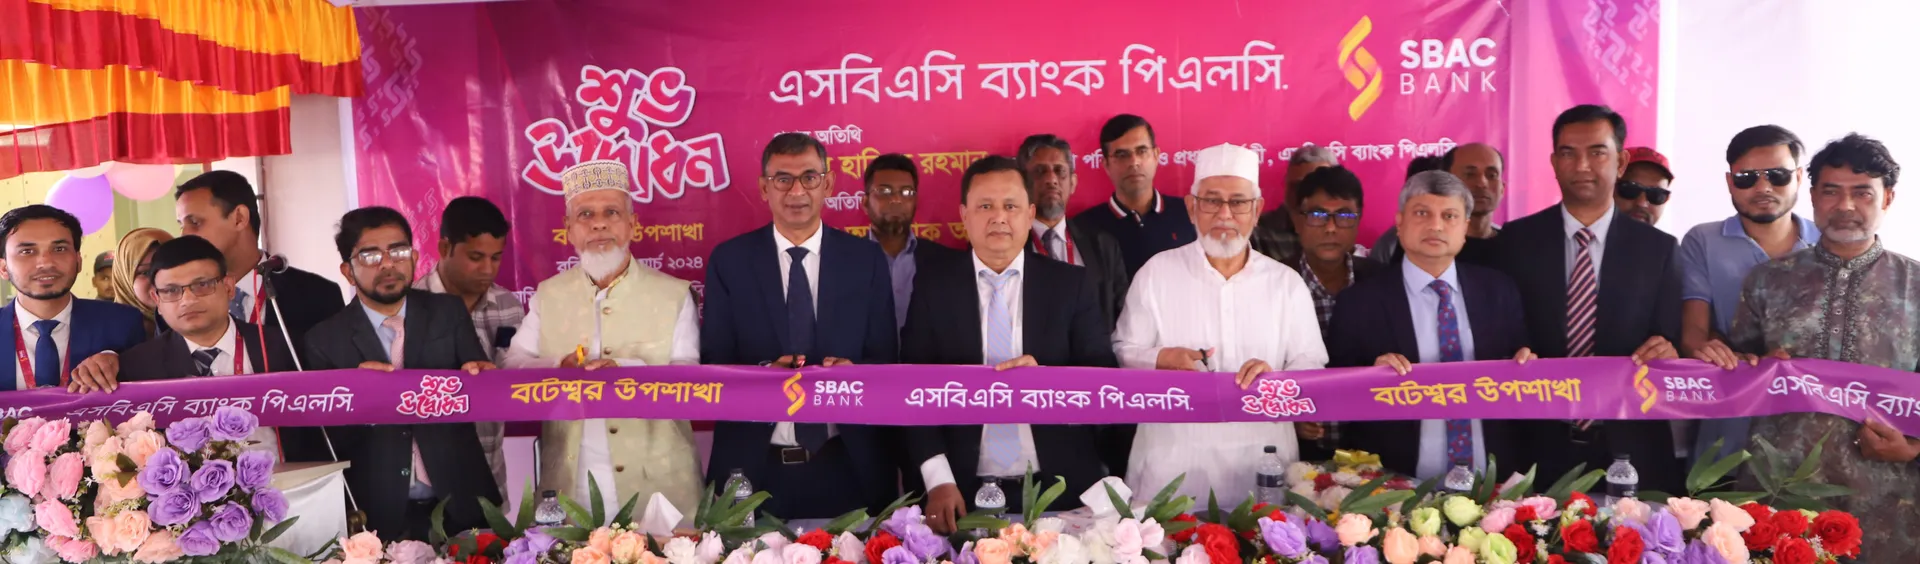 SBAC SBAC Bank opens its Sub-Branch at Boteshwar in Sylhet